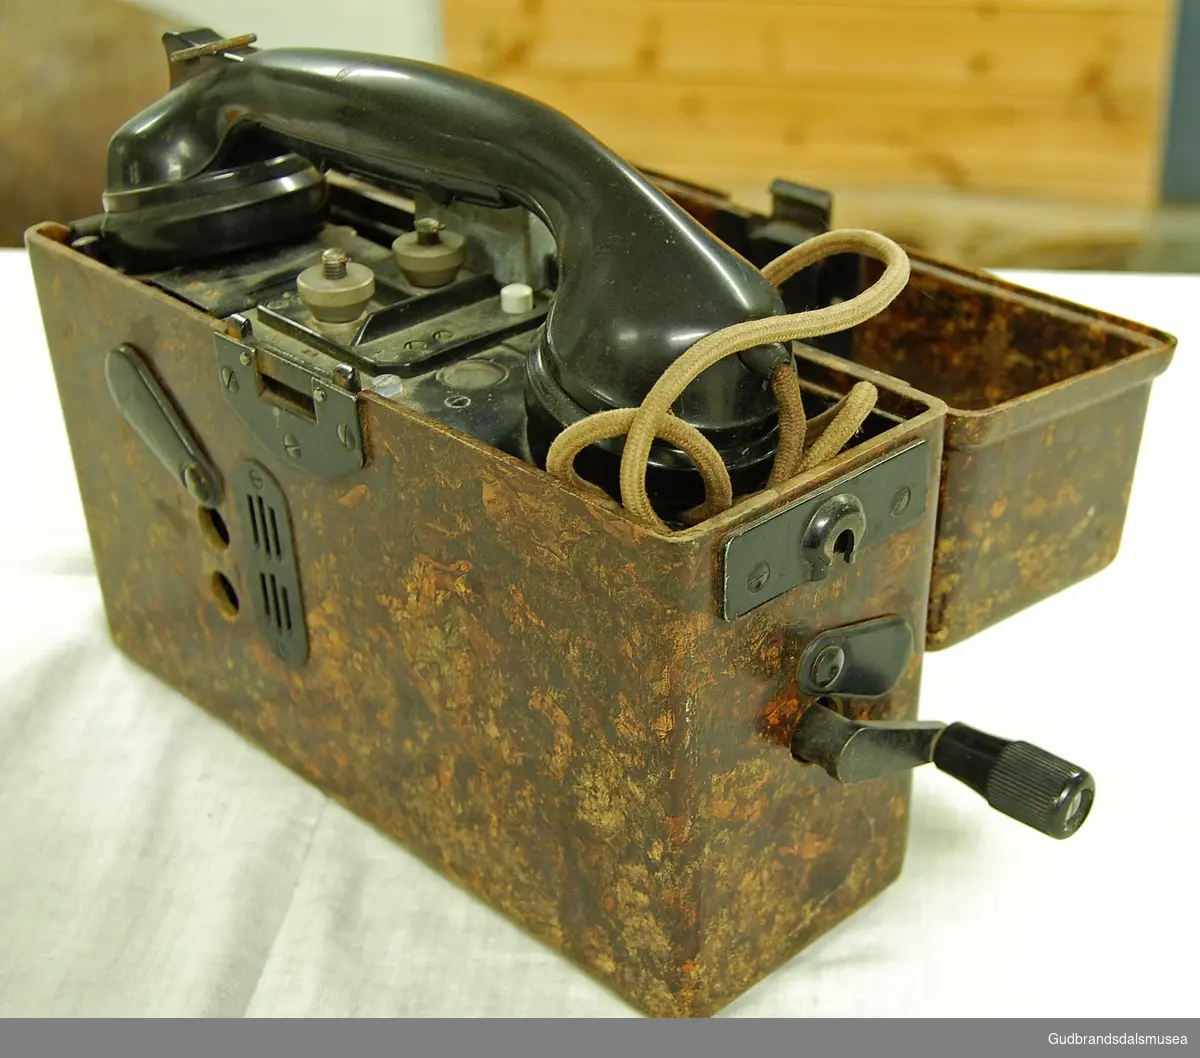 Svart telefon bygd inn i en brun, bærbar kasse. Rektangulær kasse med hengslet lokk. Med sveiv. Koblingsskjema med tysk tekst, alfabetkoder på tysk.